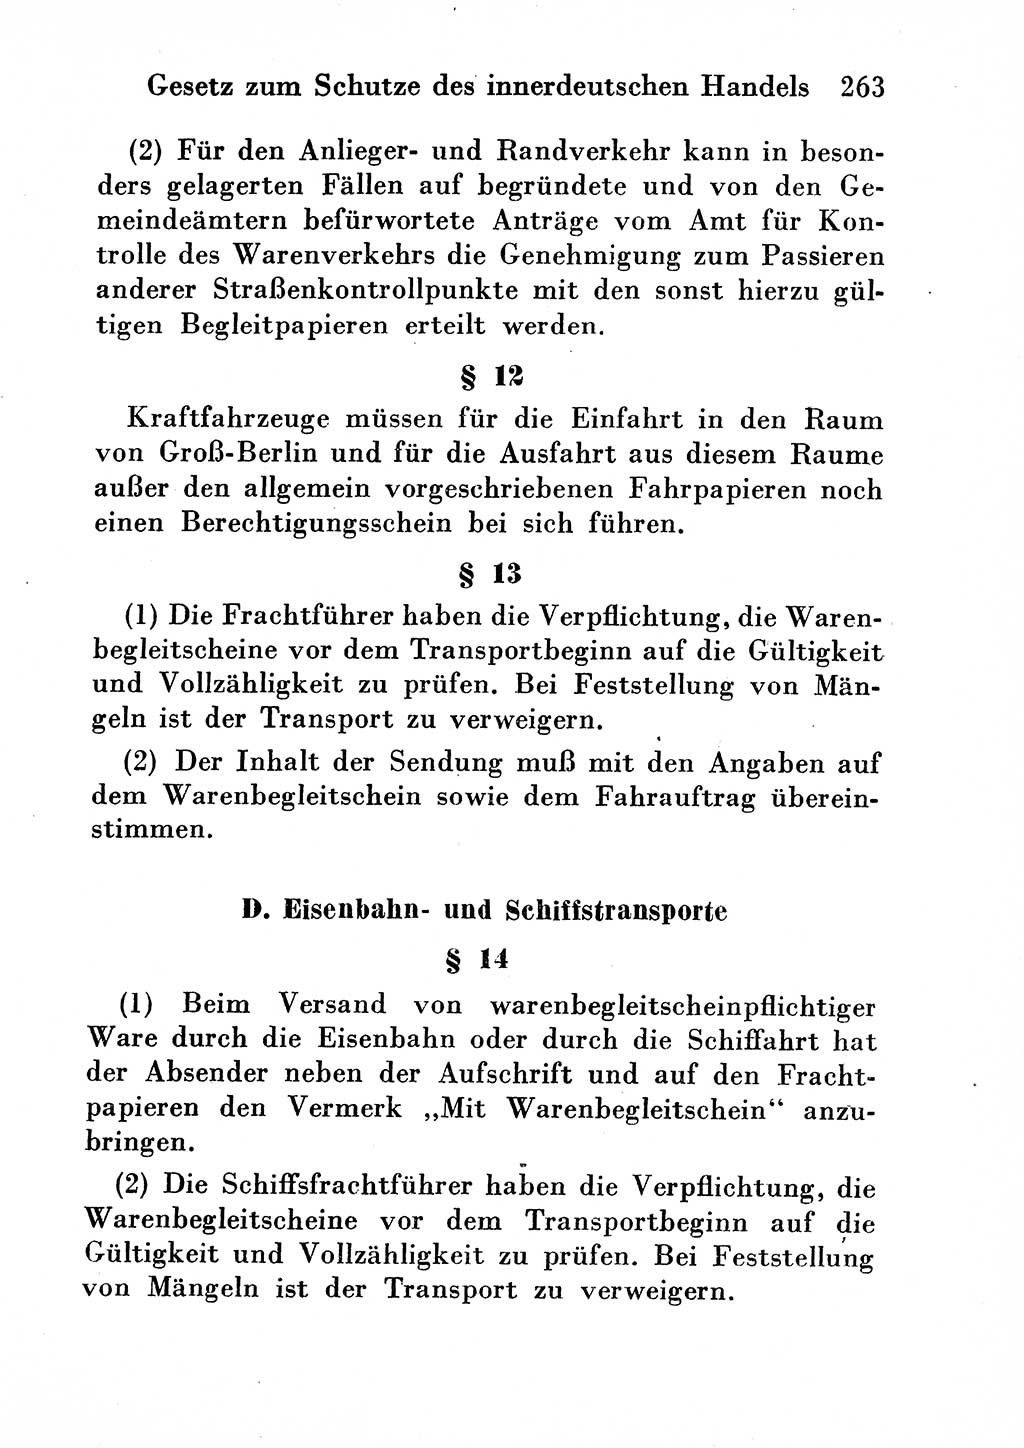 Strafgesetzbuch (StGB) und andere Strafgesetze [Deutsche Demokratische Republik (DDR)] 1954, Seite 263 (StGB Strafges. DDR 1954, S. 263)